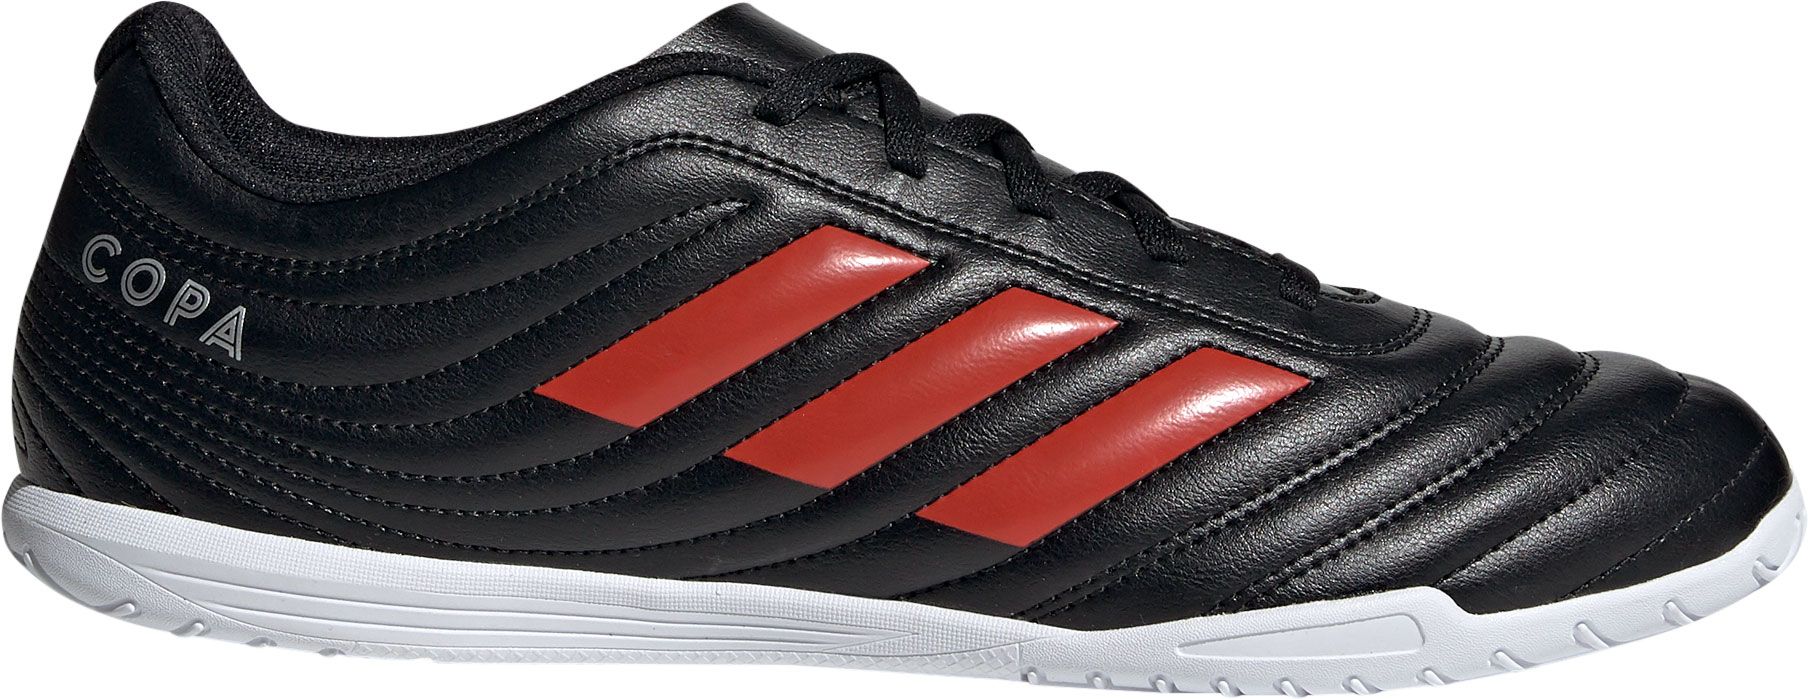 adidas men's copa 19.4 indoor soccer shoes